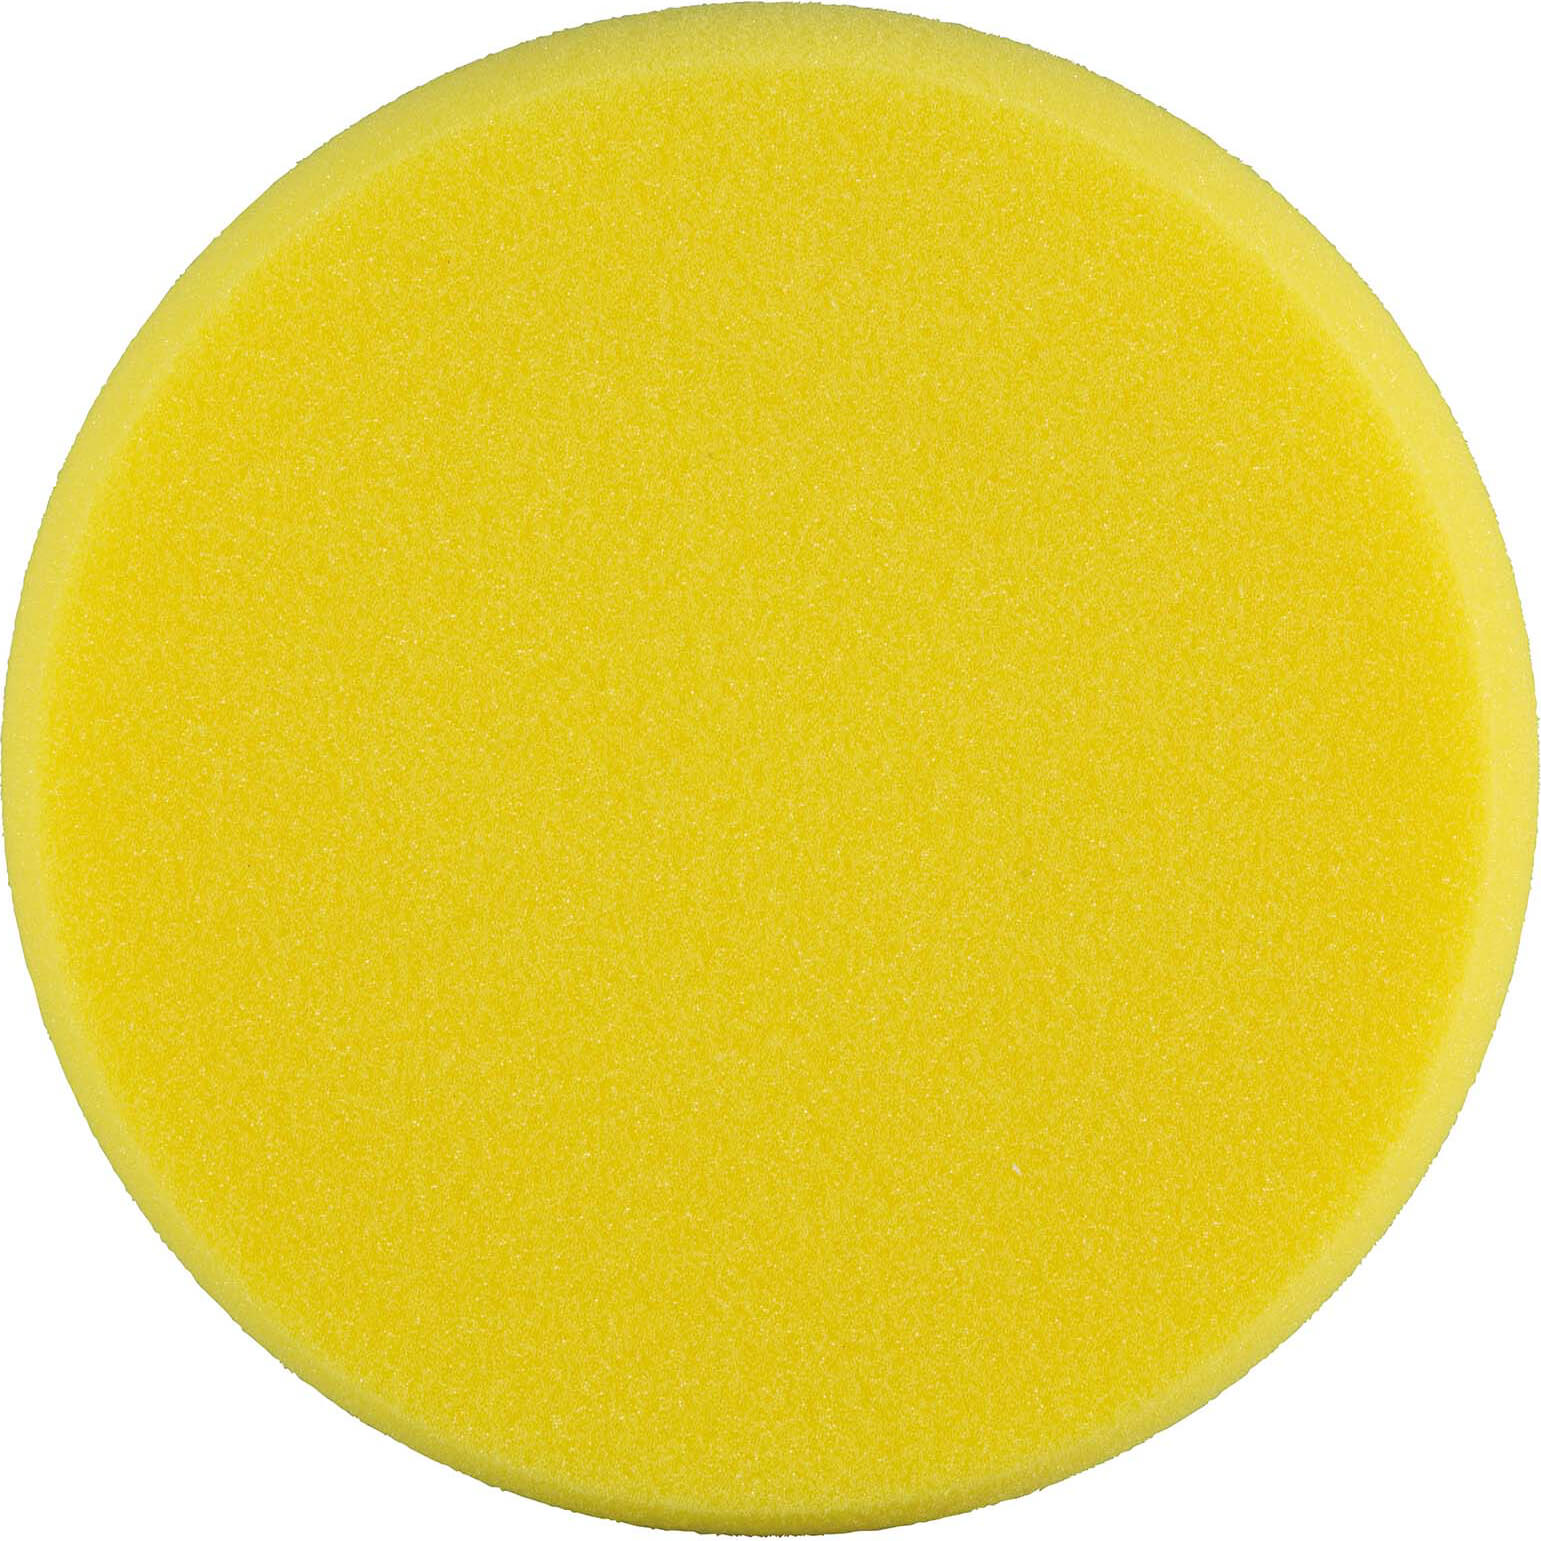 Image of Makita Yellow Polisher Sponge Pad 170mm